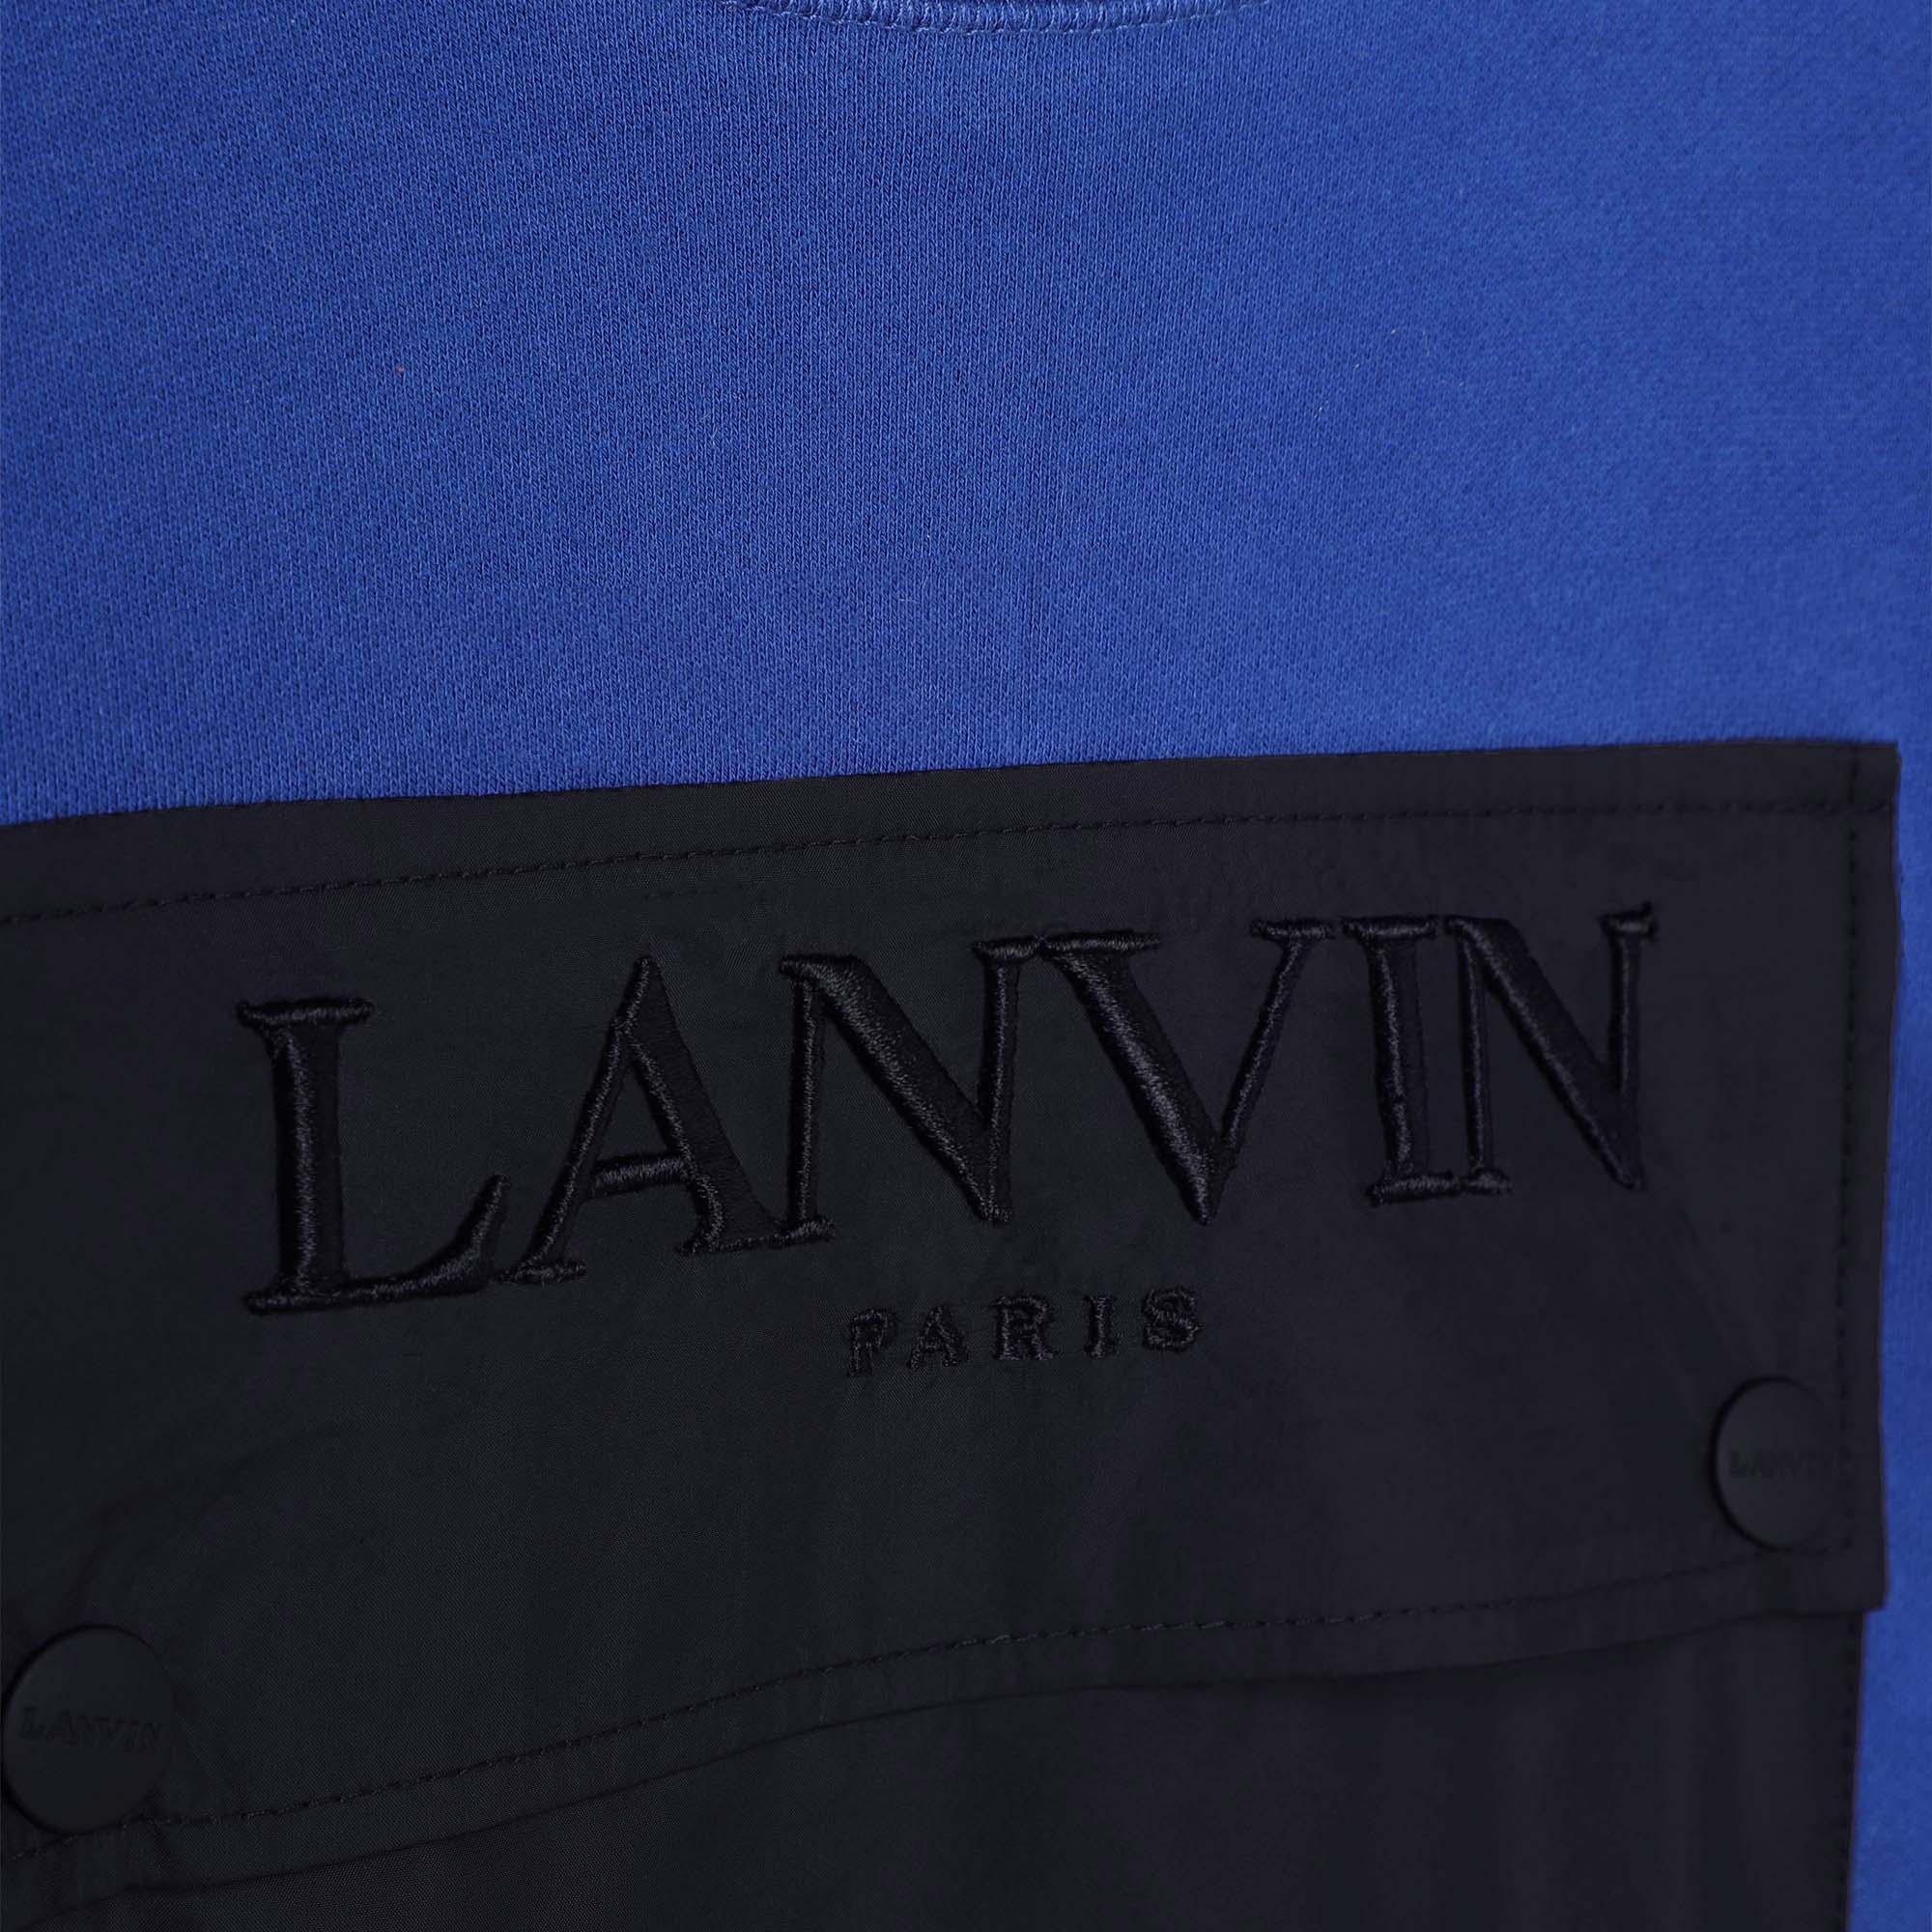 Fleece sweatshirt met zakje LANVIN Voor